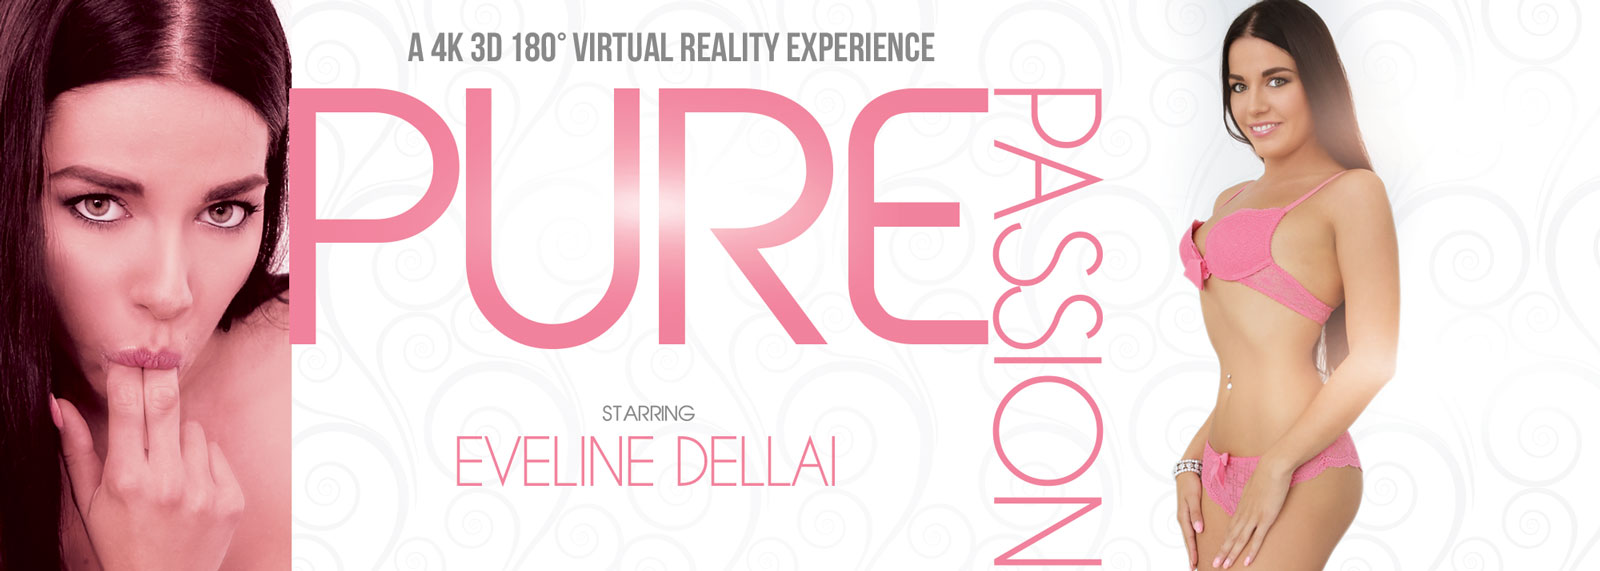 Pure Passion - VR Porn Video, Starring: Eveline Dellai